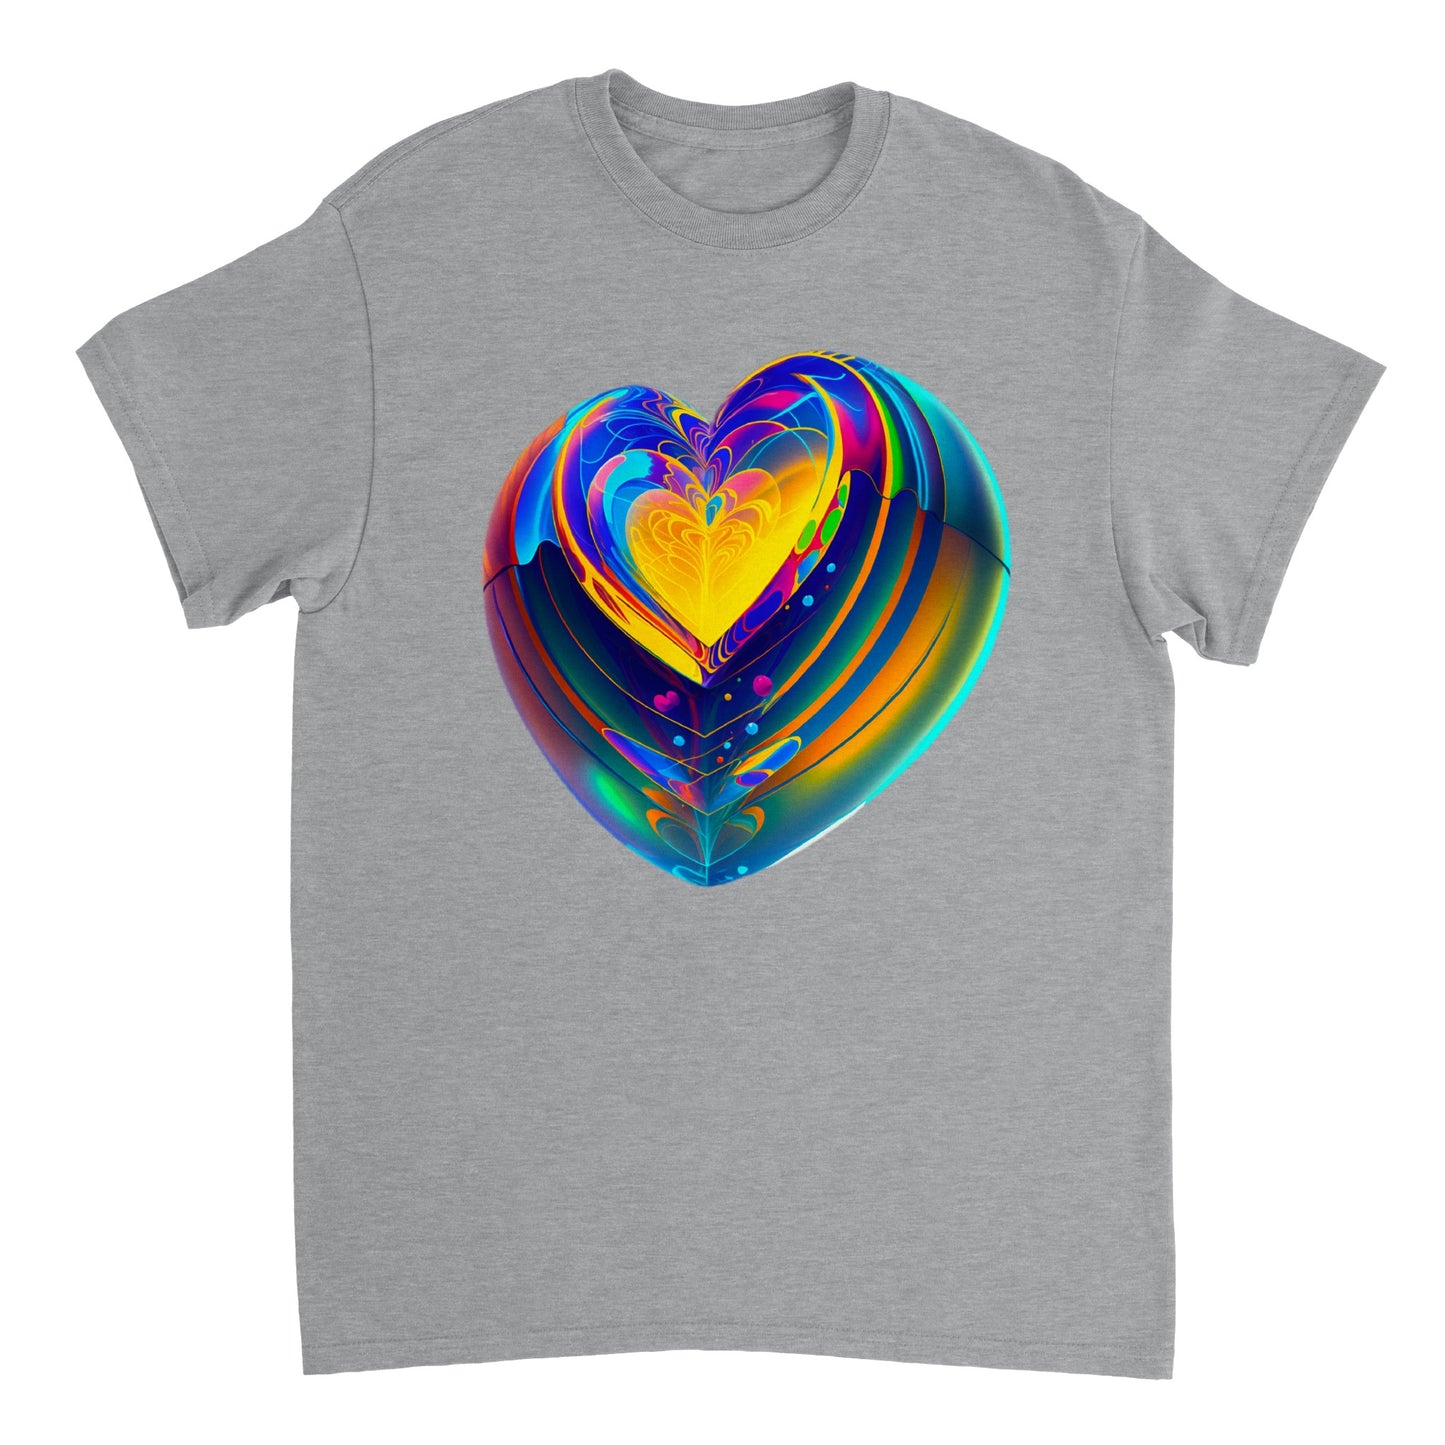 Love Heart - Heavyweight Unisex Crewneck T-shirt 41